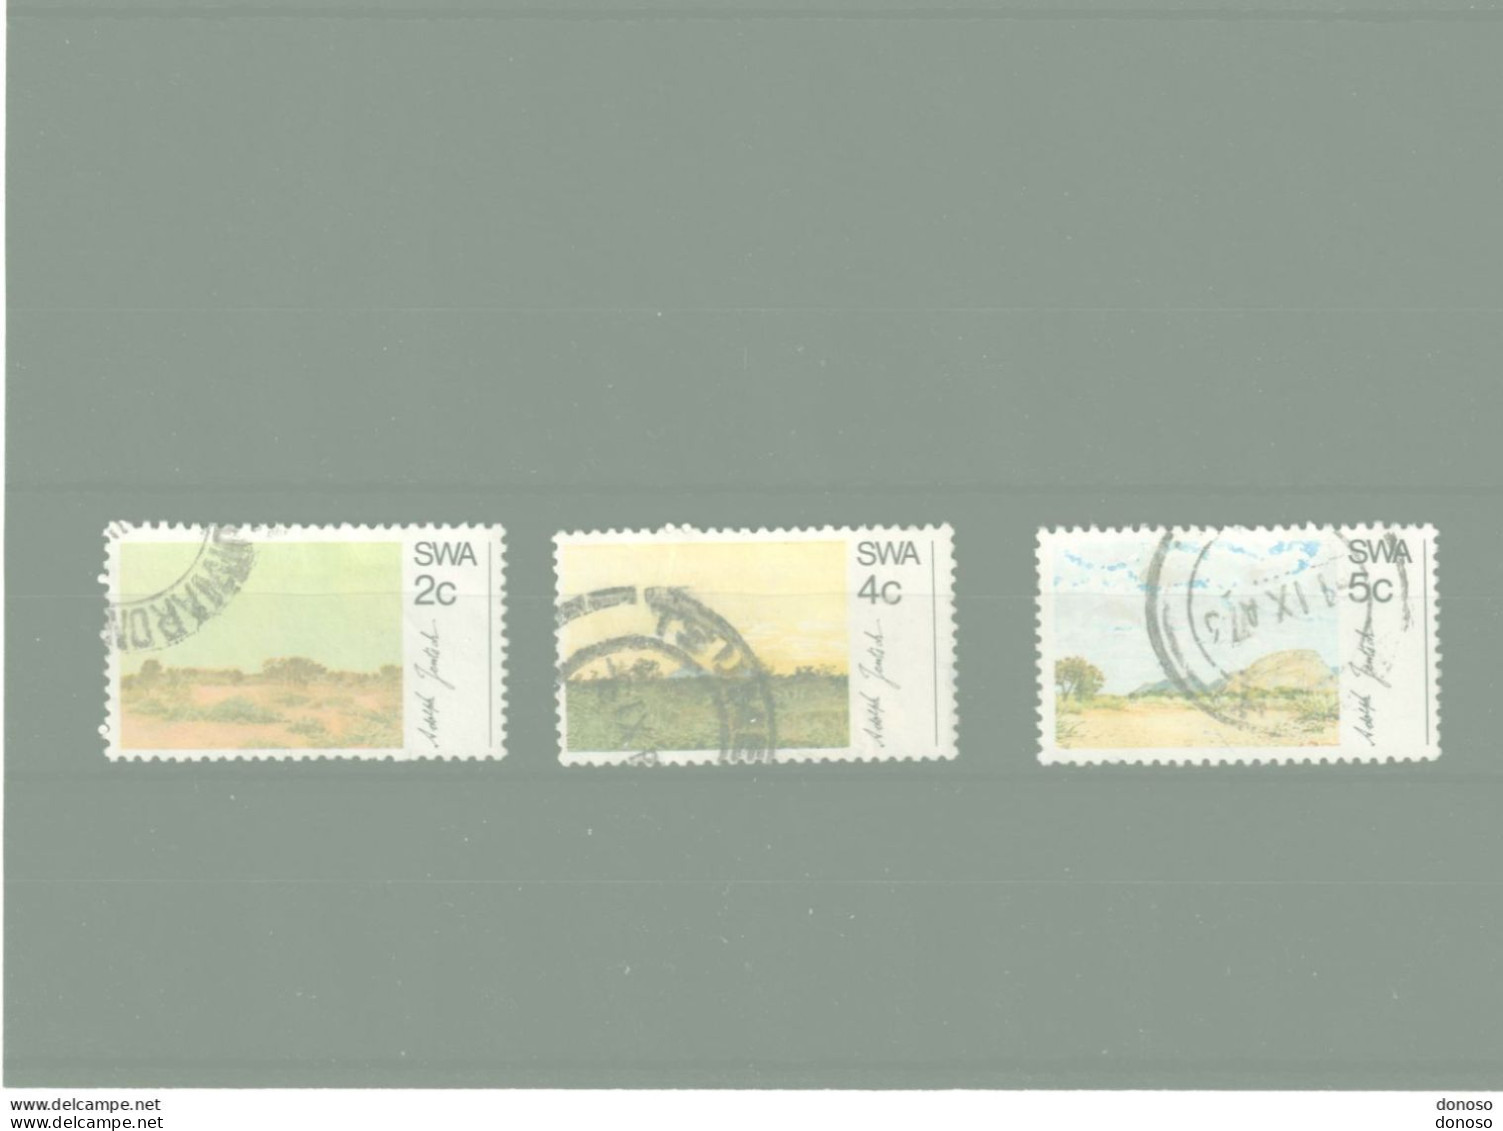 SWA SUD OUEST AFRICAIN 1973 Tableaux De Jentsch Yvert 313-315 Oblitéré Cote Yv 5 Euros - Afrique Du Sud-Ouest (1923-1990)